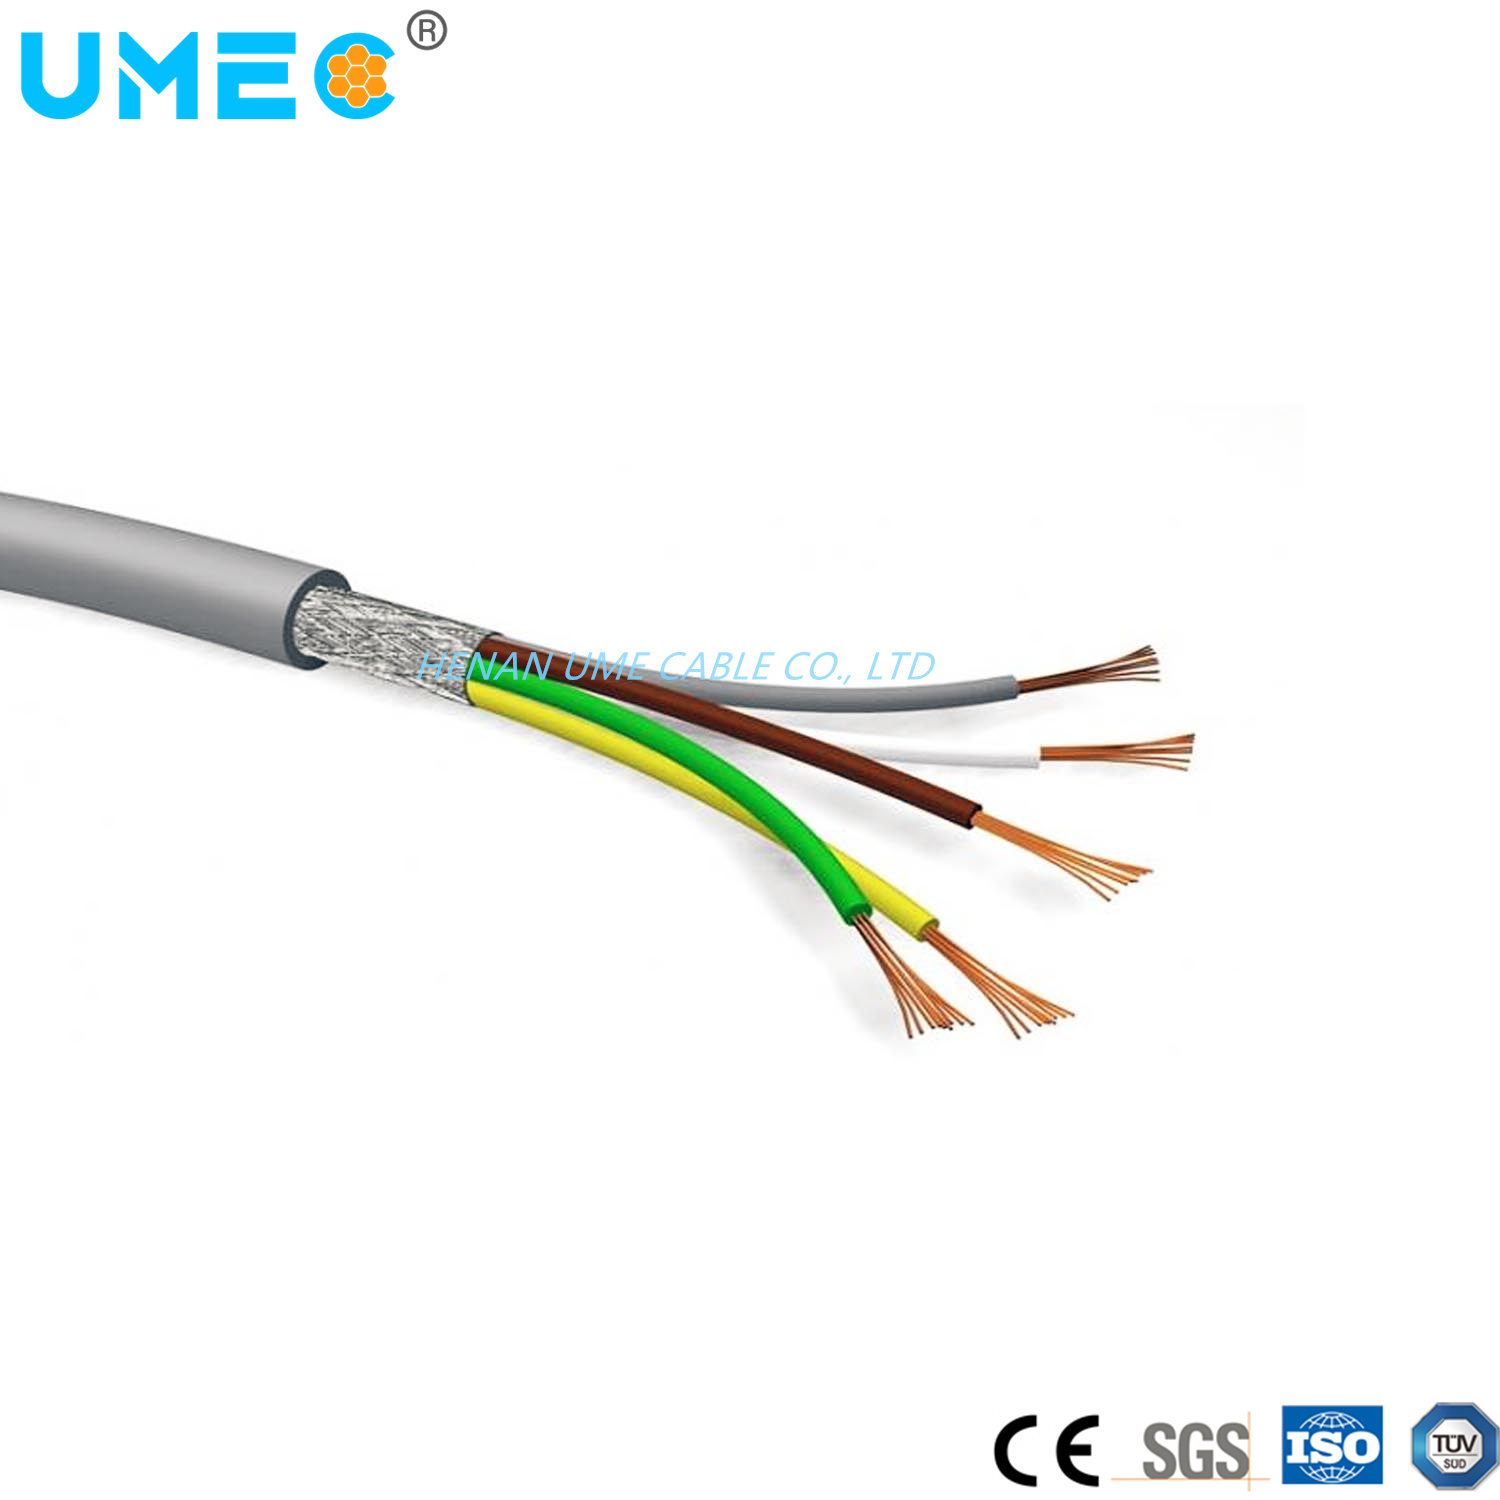 
                Li Liyy Liycy утвержденном CE2yy электрический неэкранированная экранированный шланг низкого напряжения 300V сигнал и трос управления для связи
            